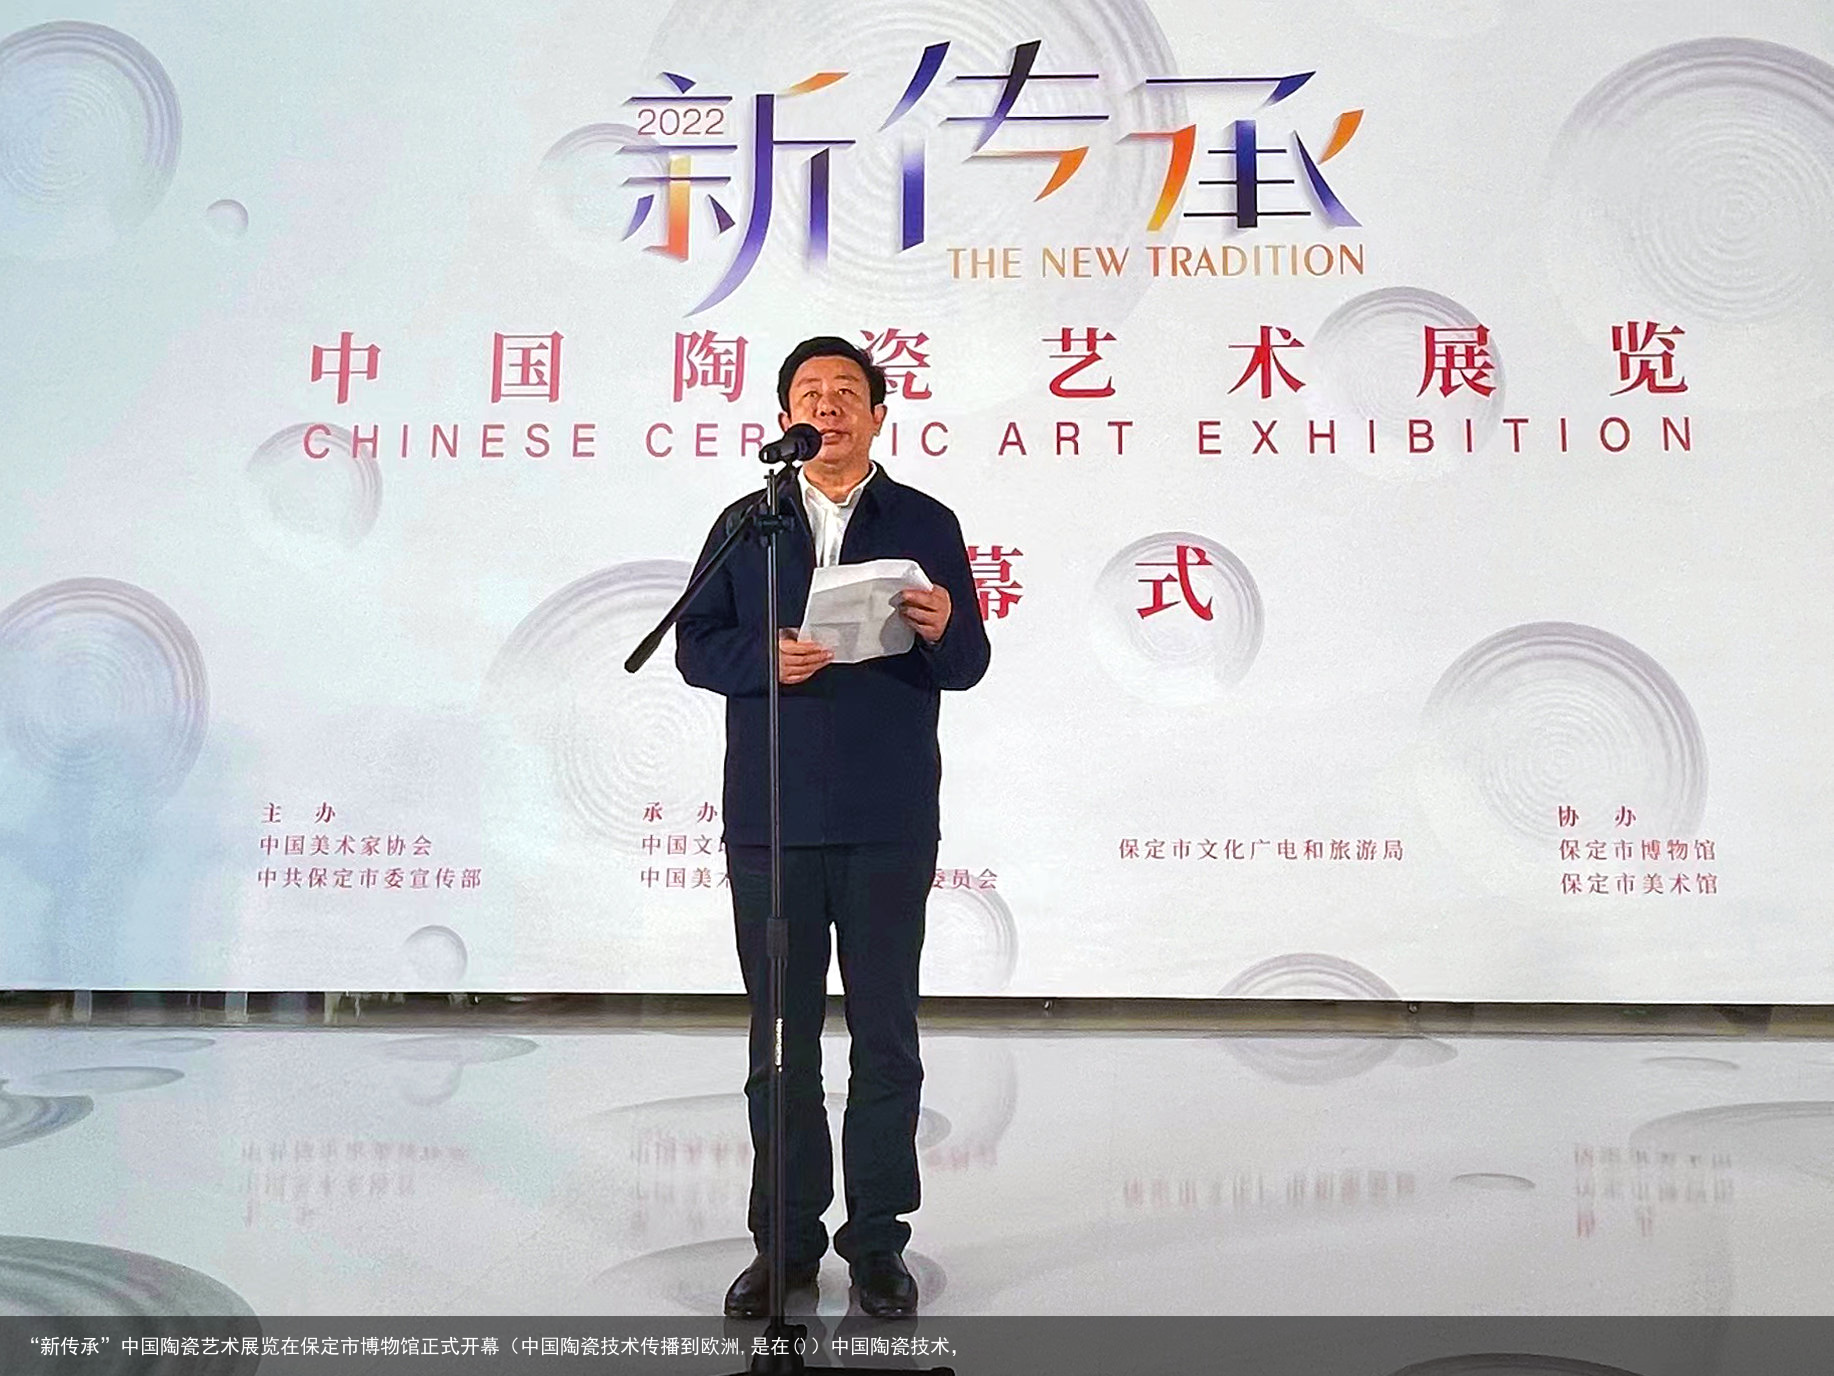 “新传承”中国陶瓷艺术展览在保定市博物馆正式开幕（中国陶瓷技术传播到欧洲,是在()）中国陶瓷技术，